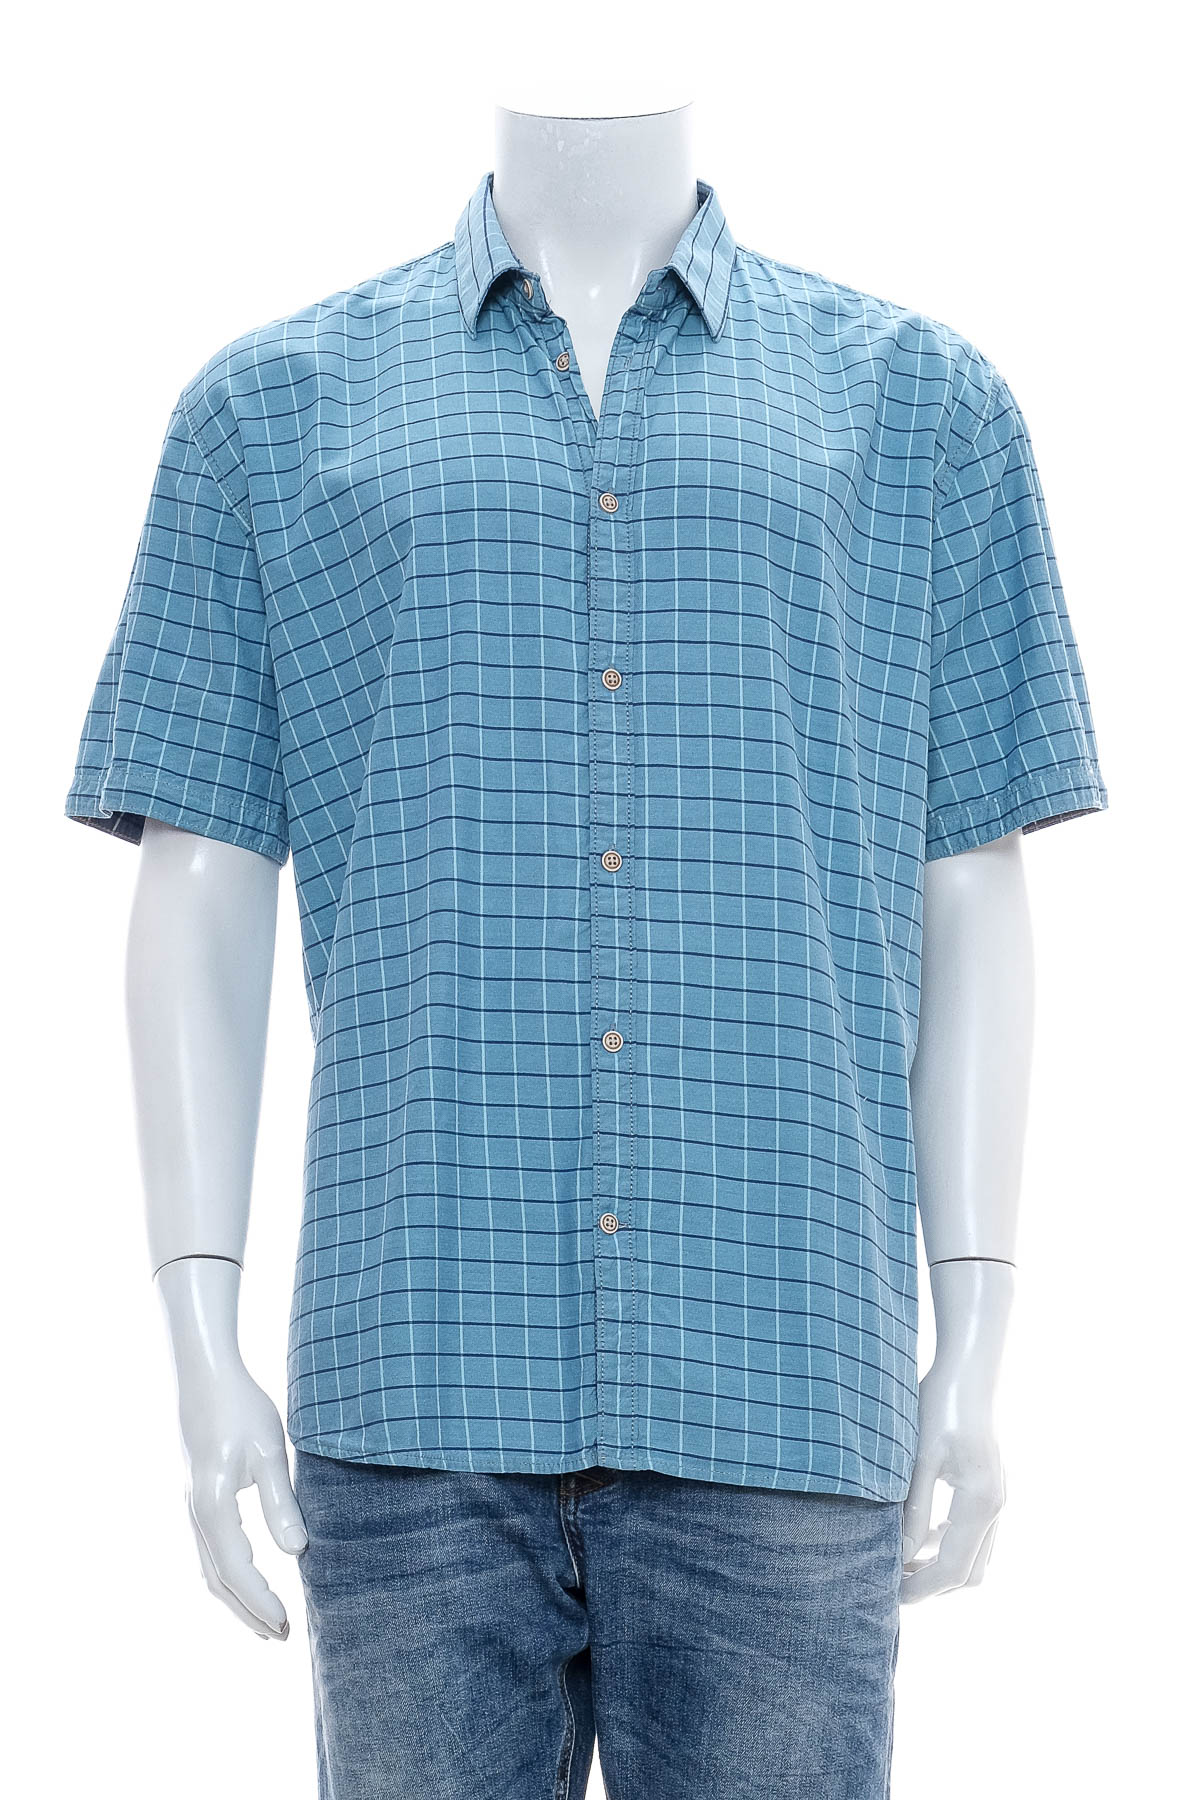 Ανδρικό πουκάμισο - TOM TAILOR - 0